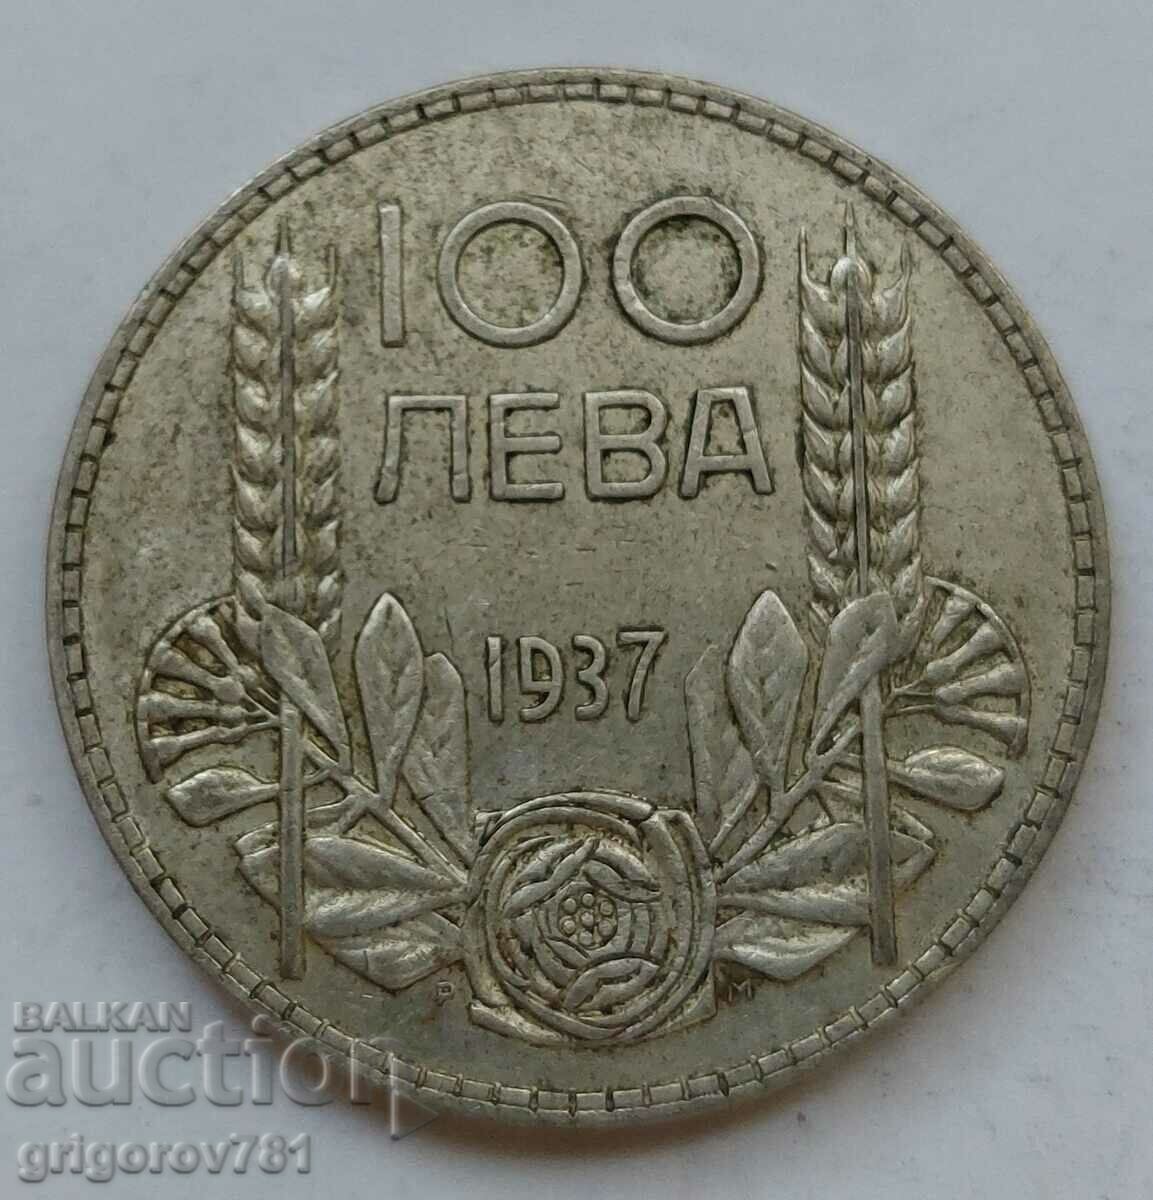 100 leva silver Bulgaria 1937 - silver coin #151